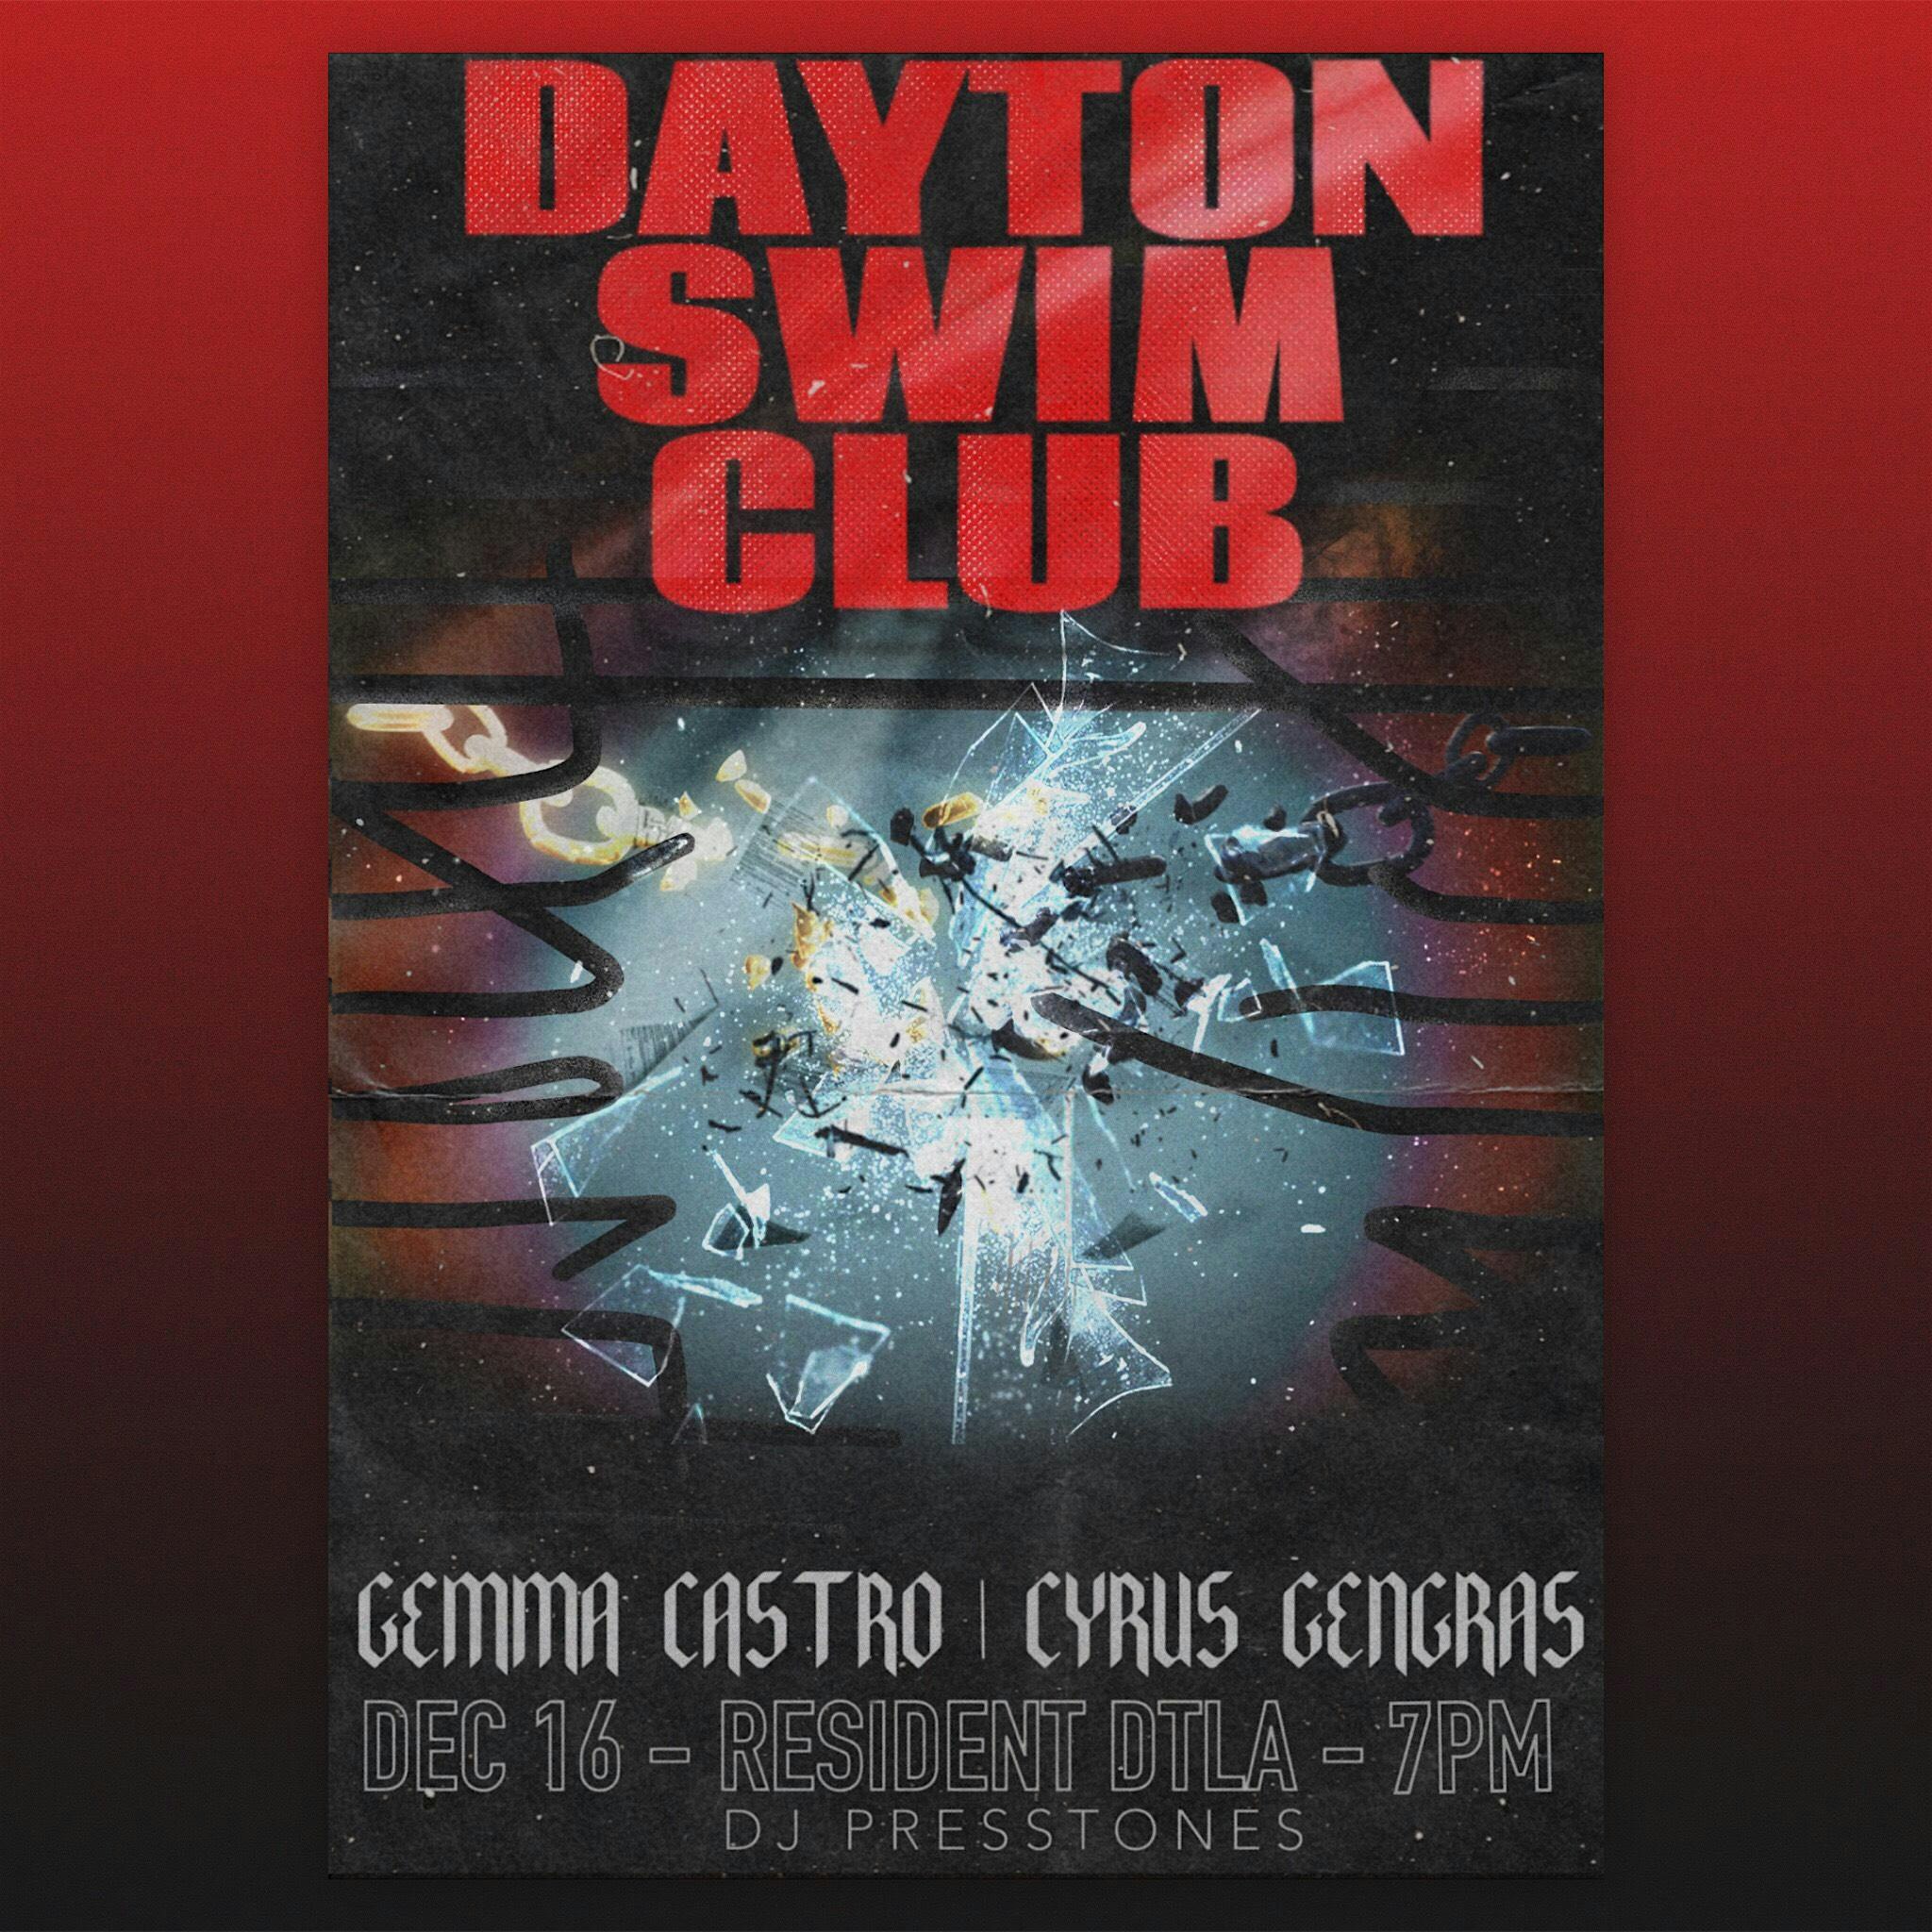 Dayton Swim Club, Gemma Castro and Cyrus Gengras